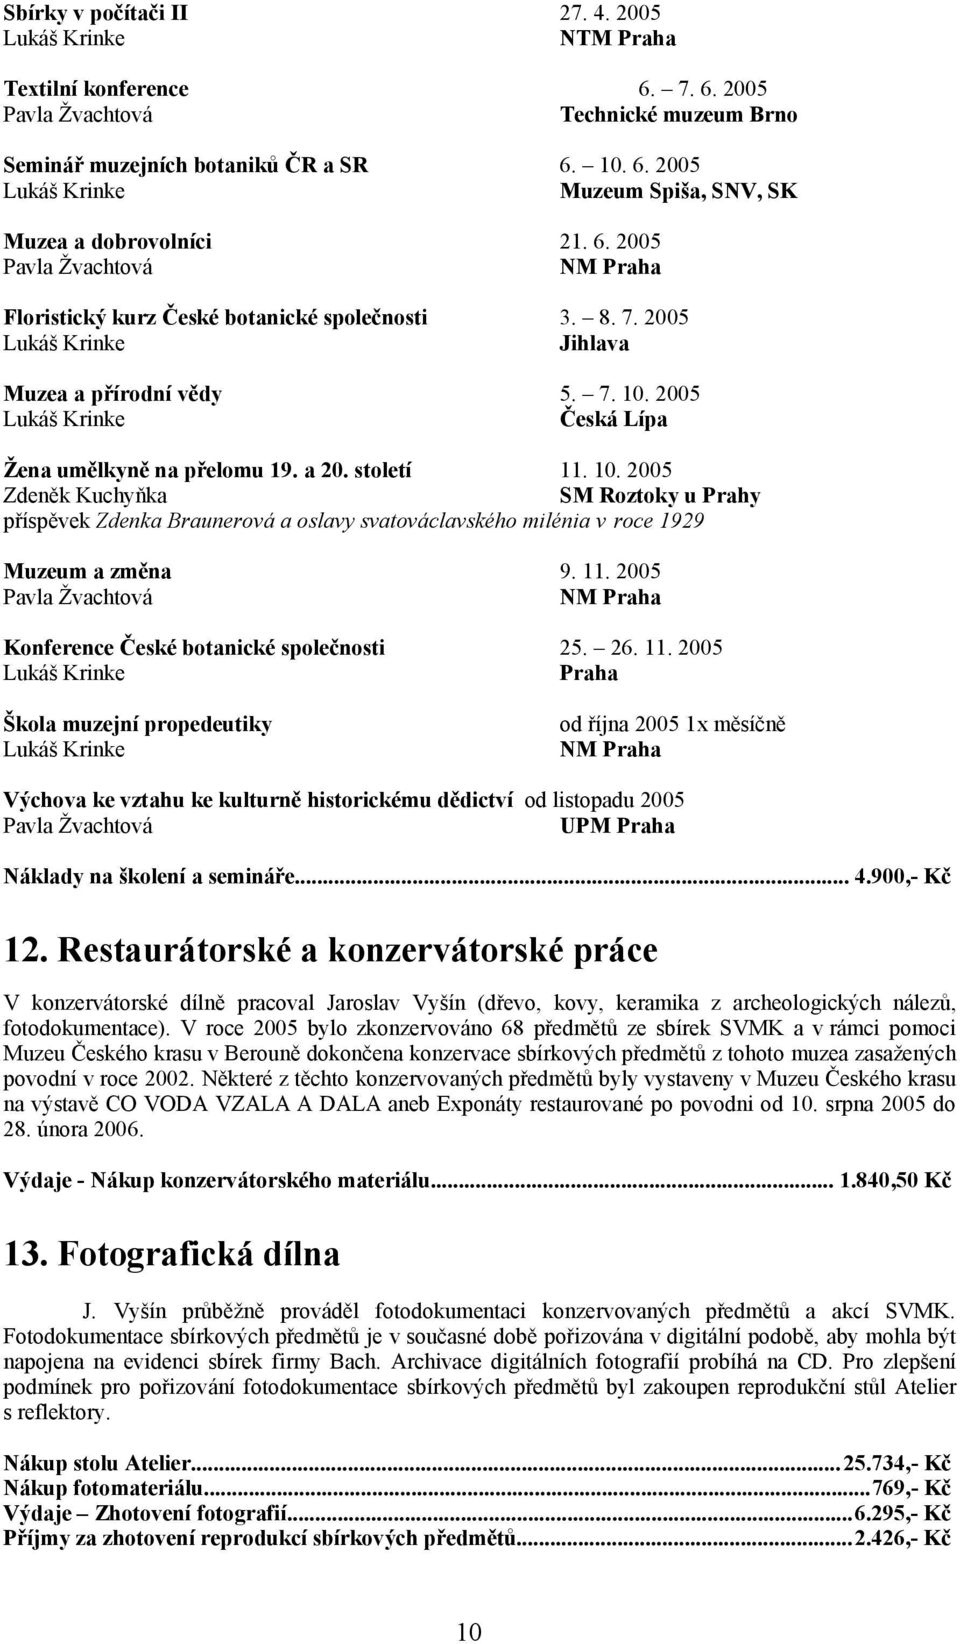 2005 Lukáš Krinke Česká Lípa Žena umělkyně na přelomu 19. a 20. století 11. 10.